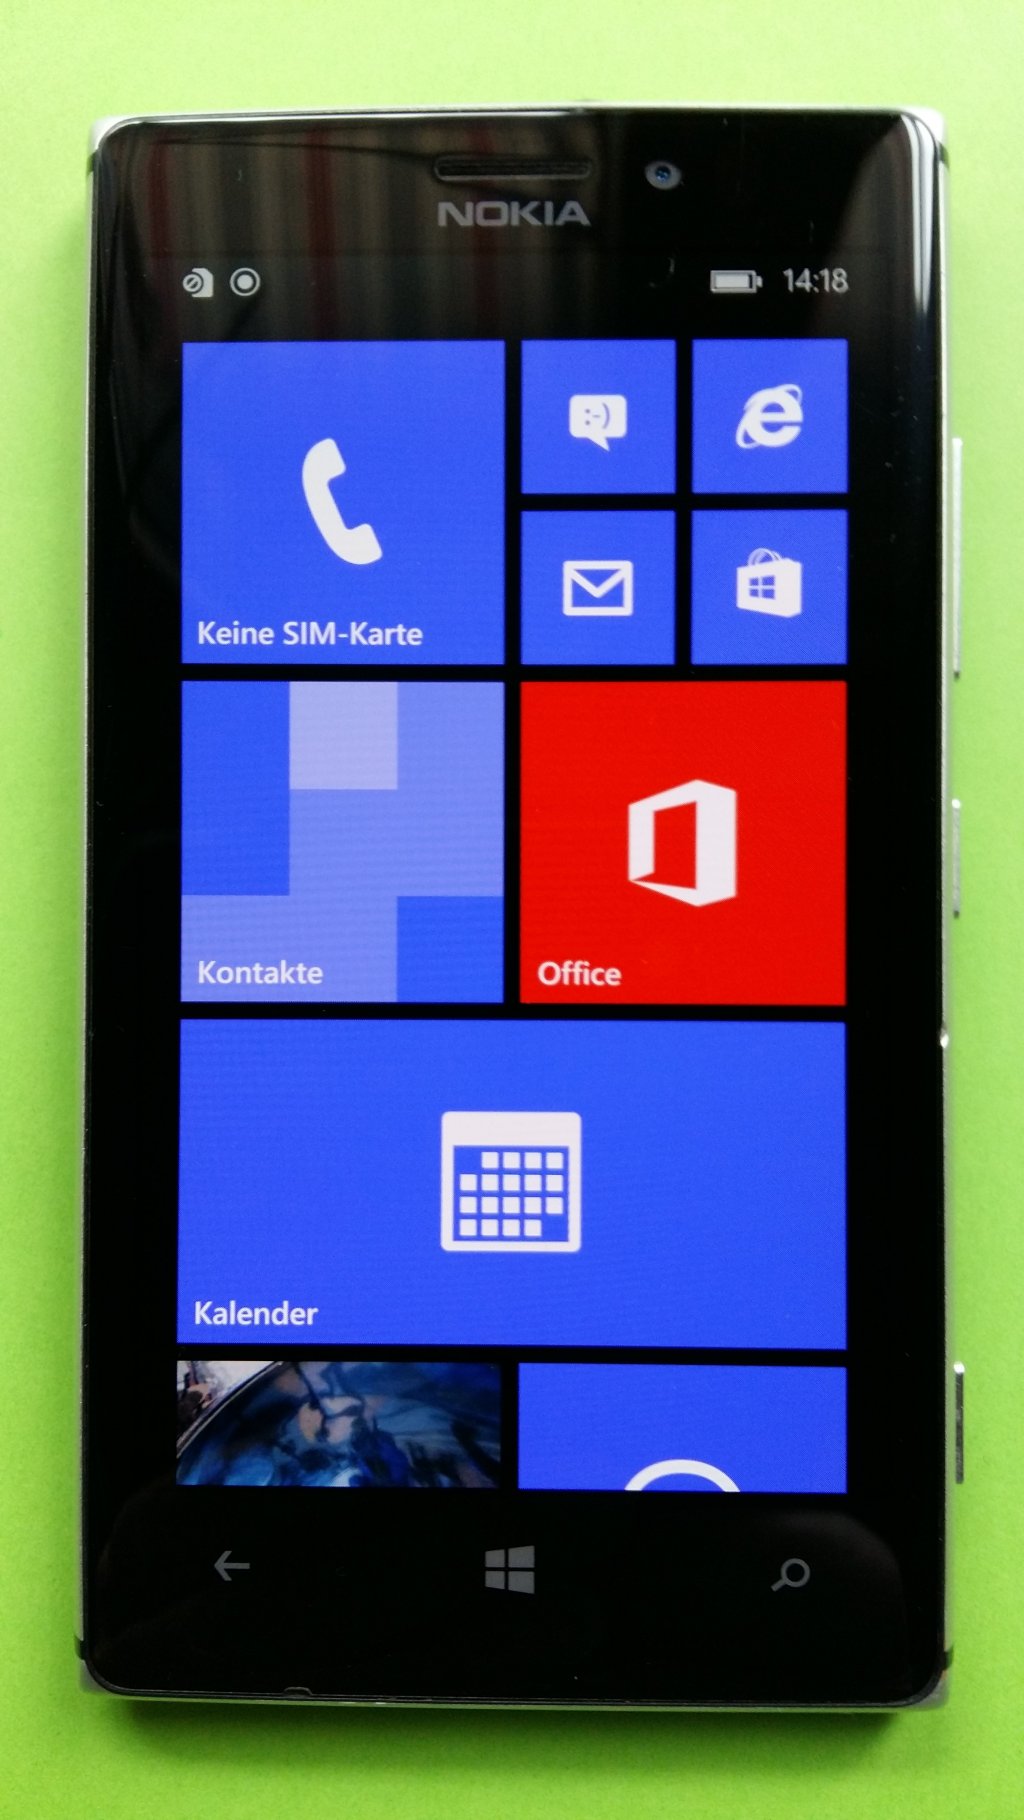 image-8050930-Nokia_925.1_Lumia_(2)1.w640.jpg